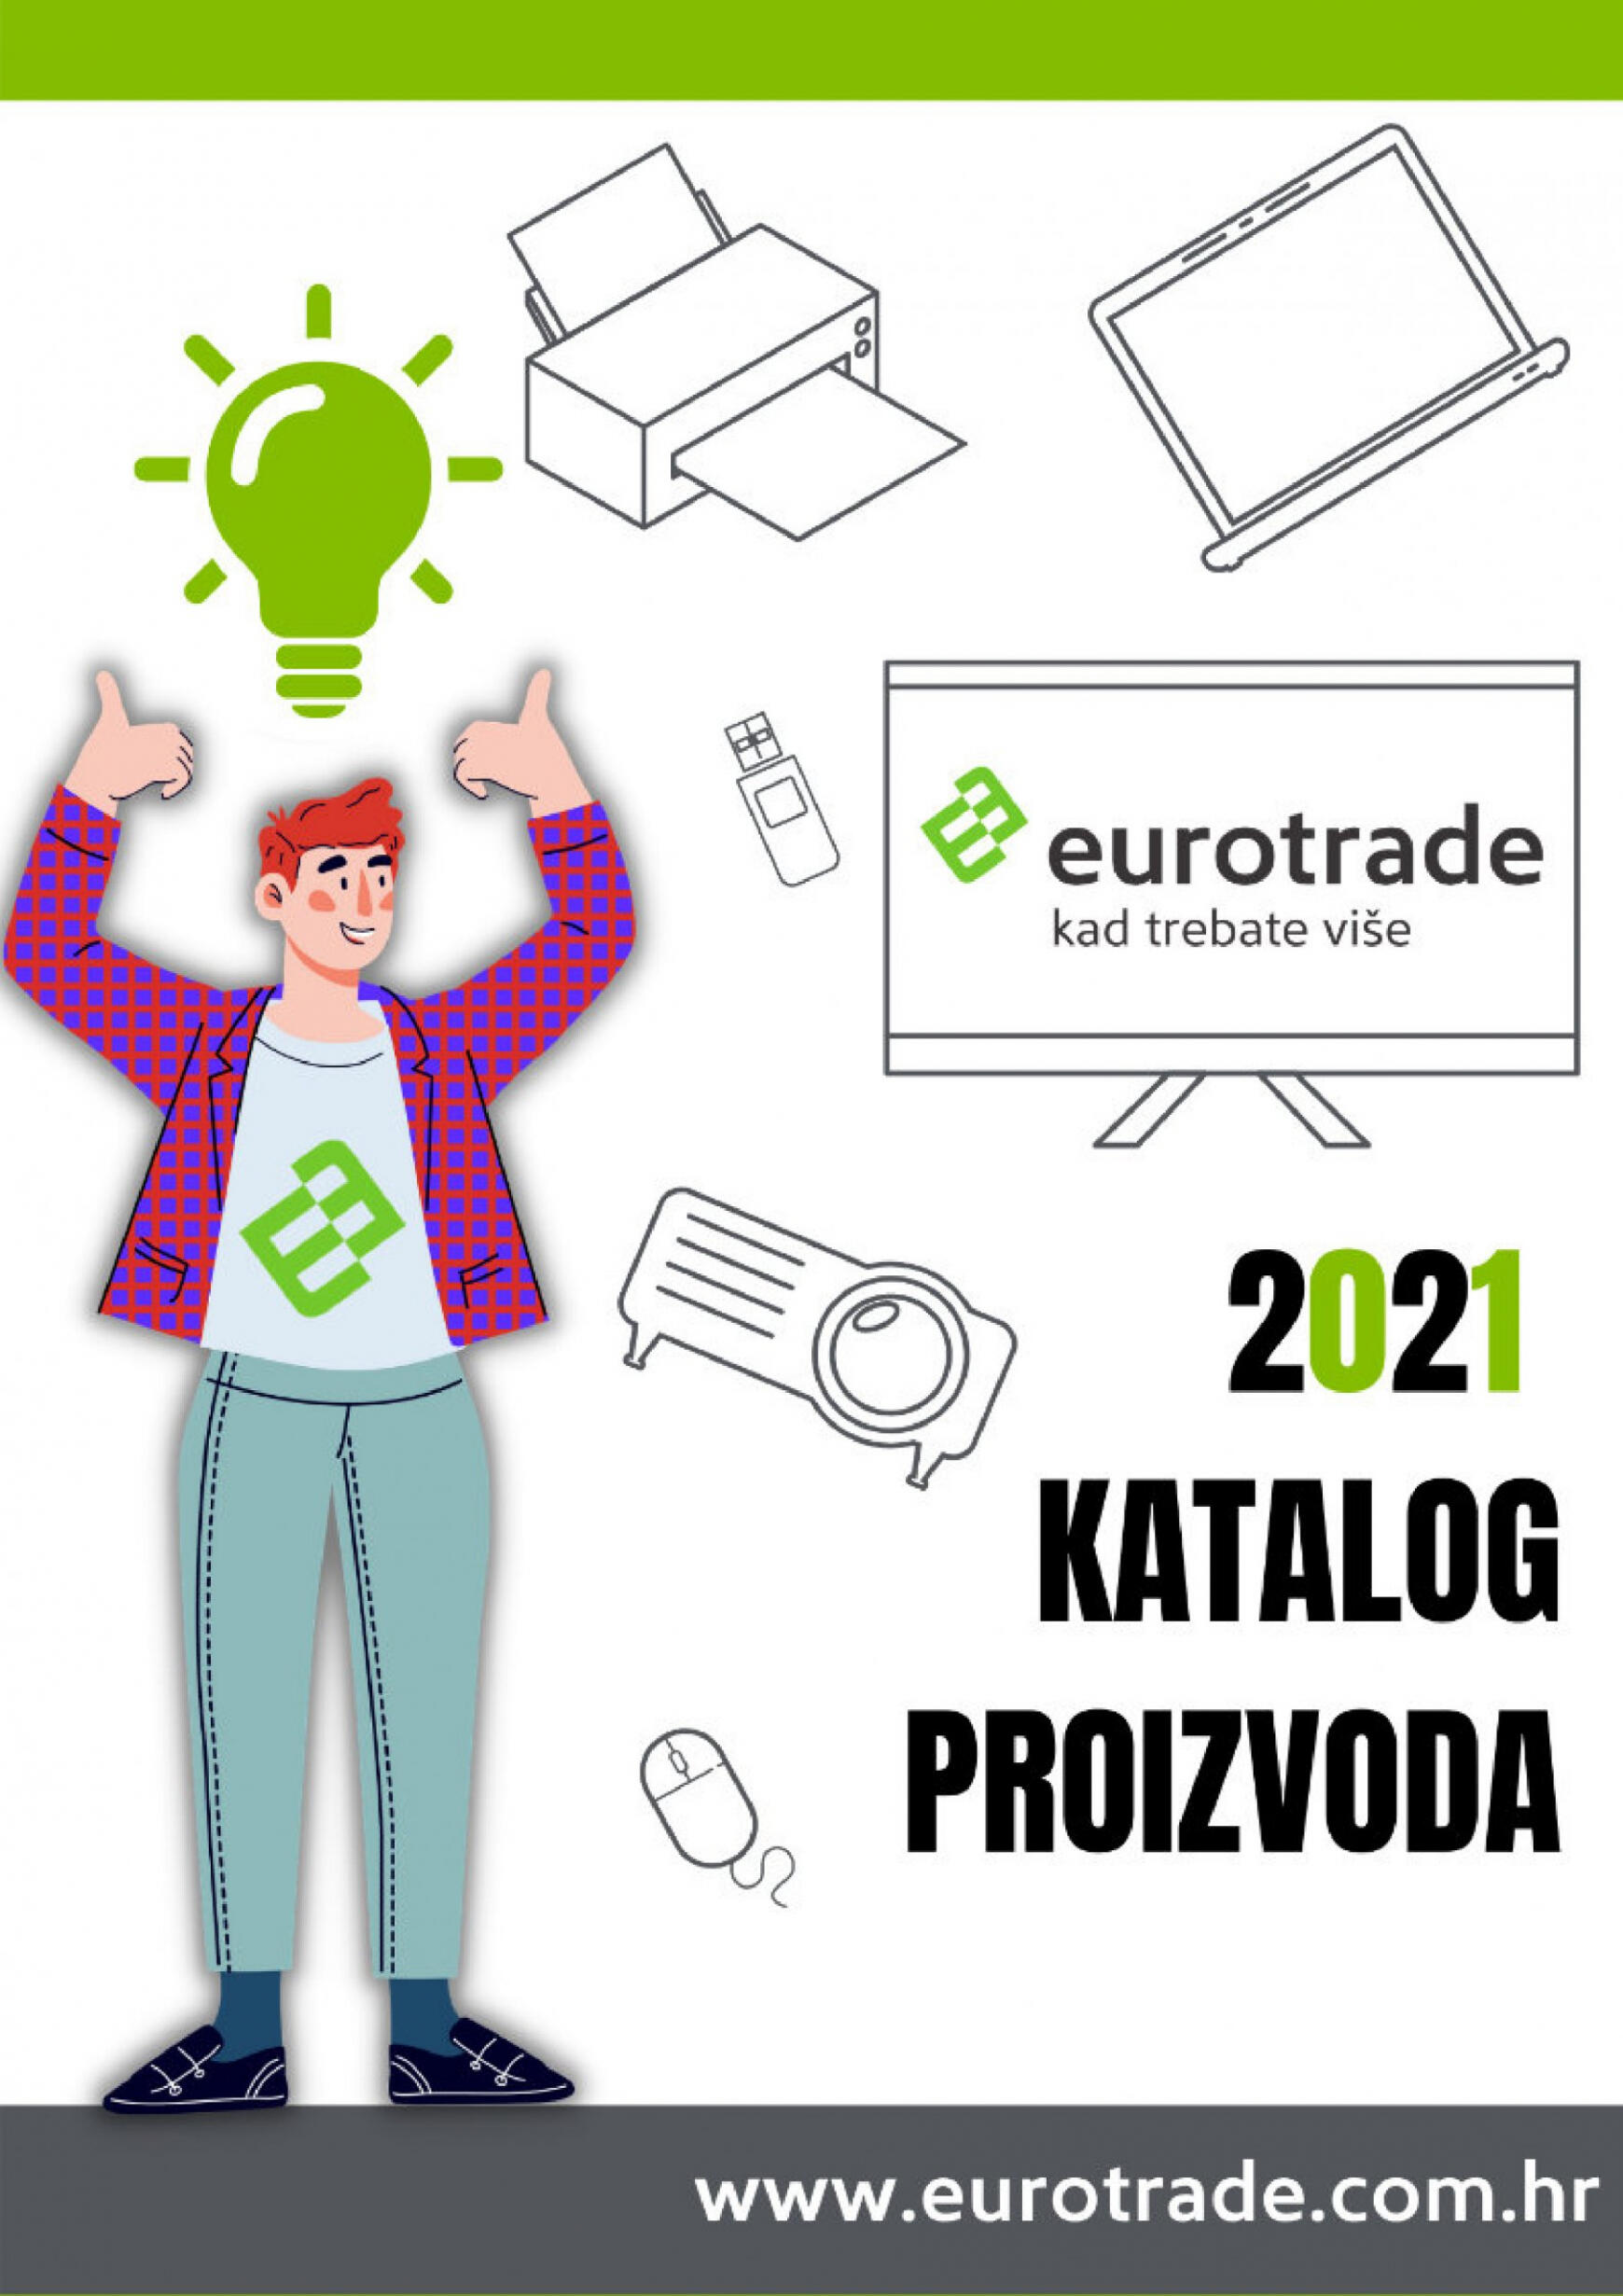 eurotrade - Eurotrade katalog od utorka 04.10.